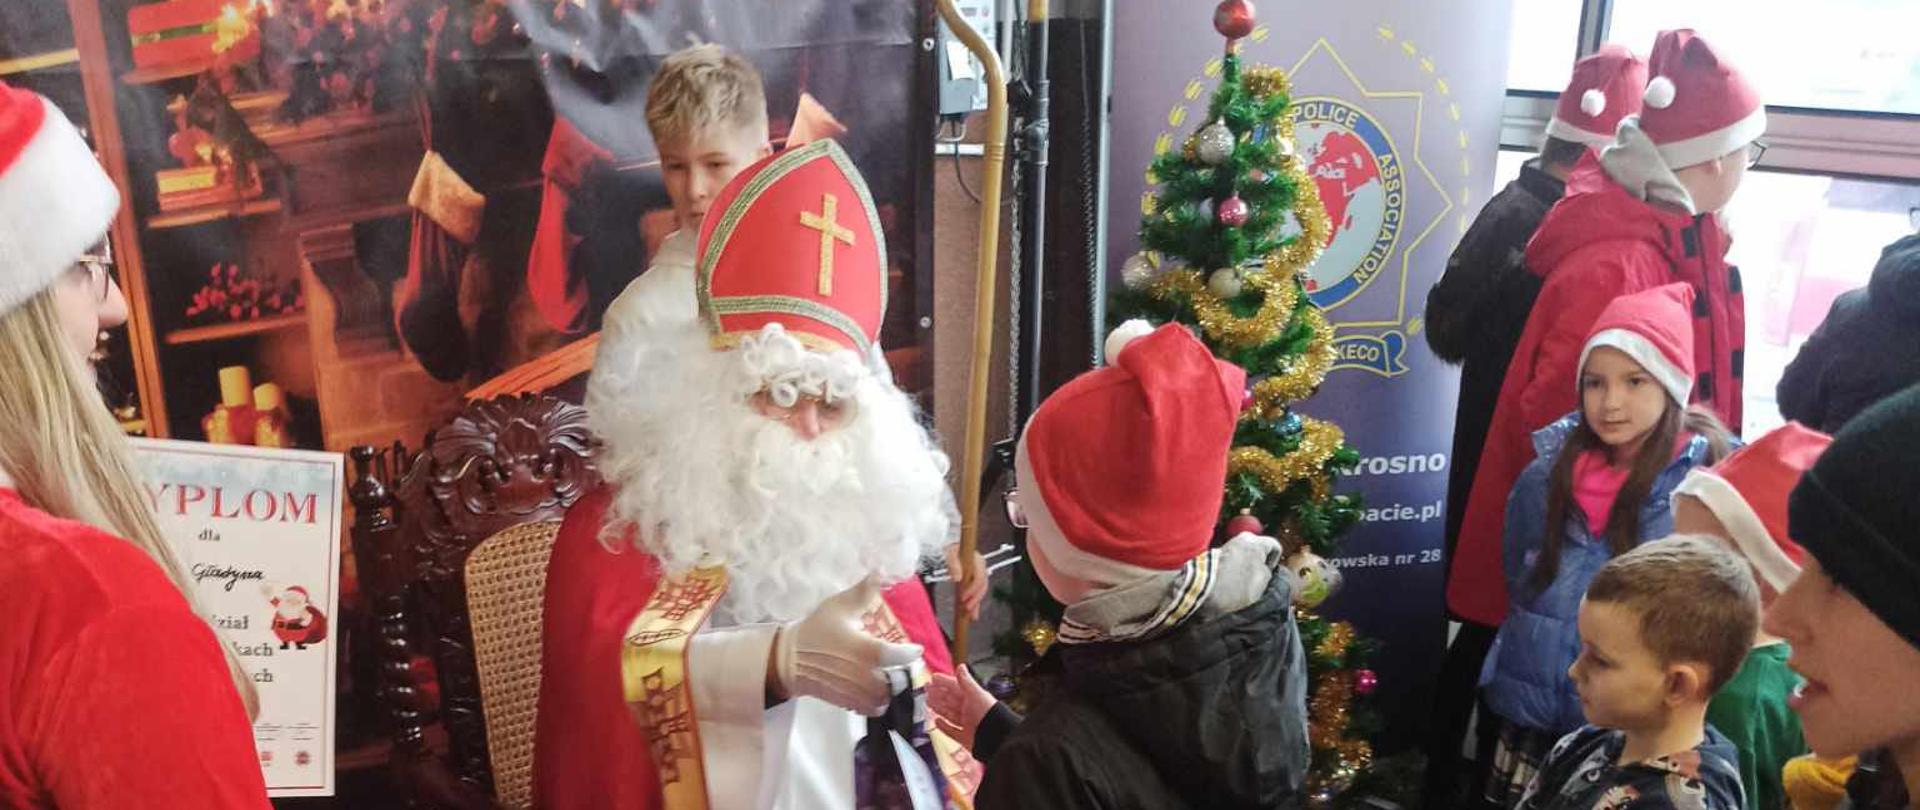 Na zdjęciu widoczny jest Mikołaj rozdający prezenty dzieciom podczas Spotkania z Mikołajem w KM PSP Krosno.